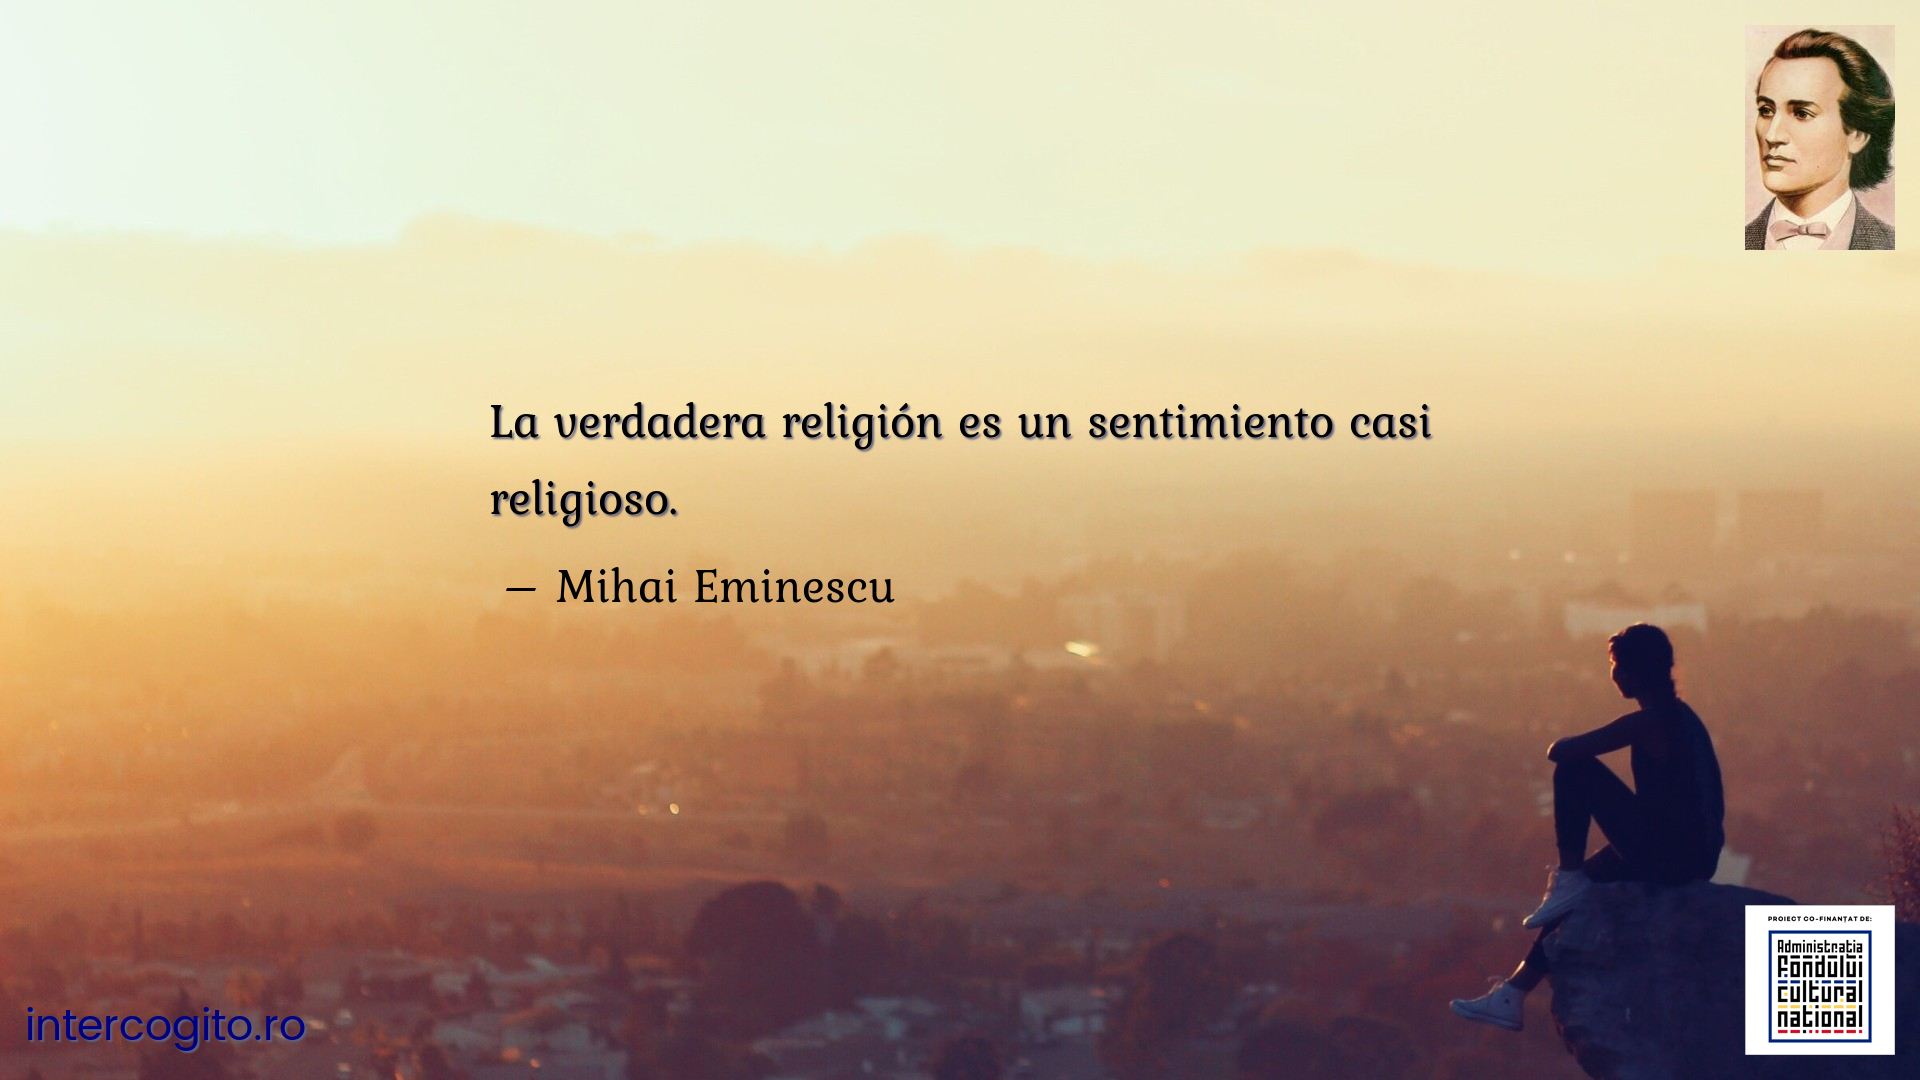 La verdadera religión es un sentimiento casi religioso.